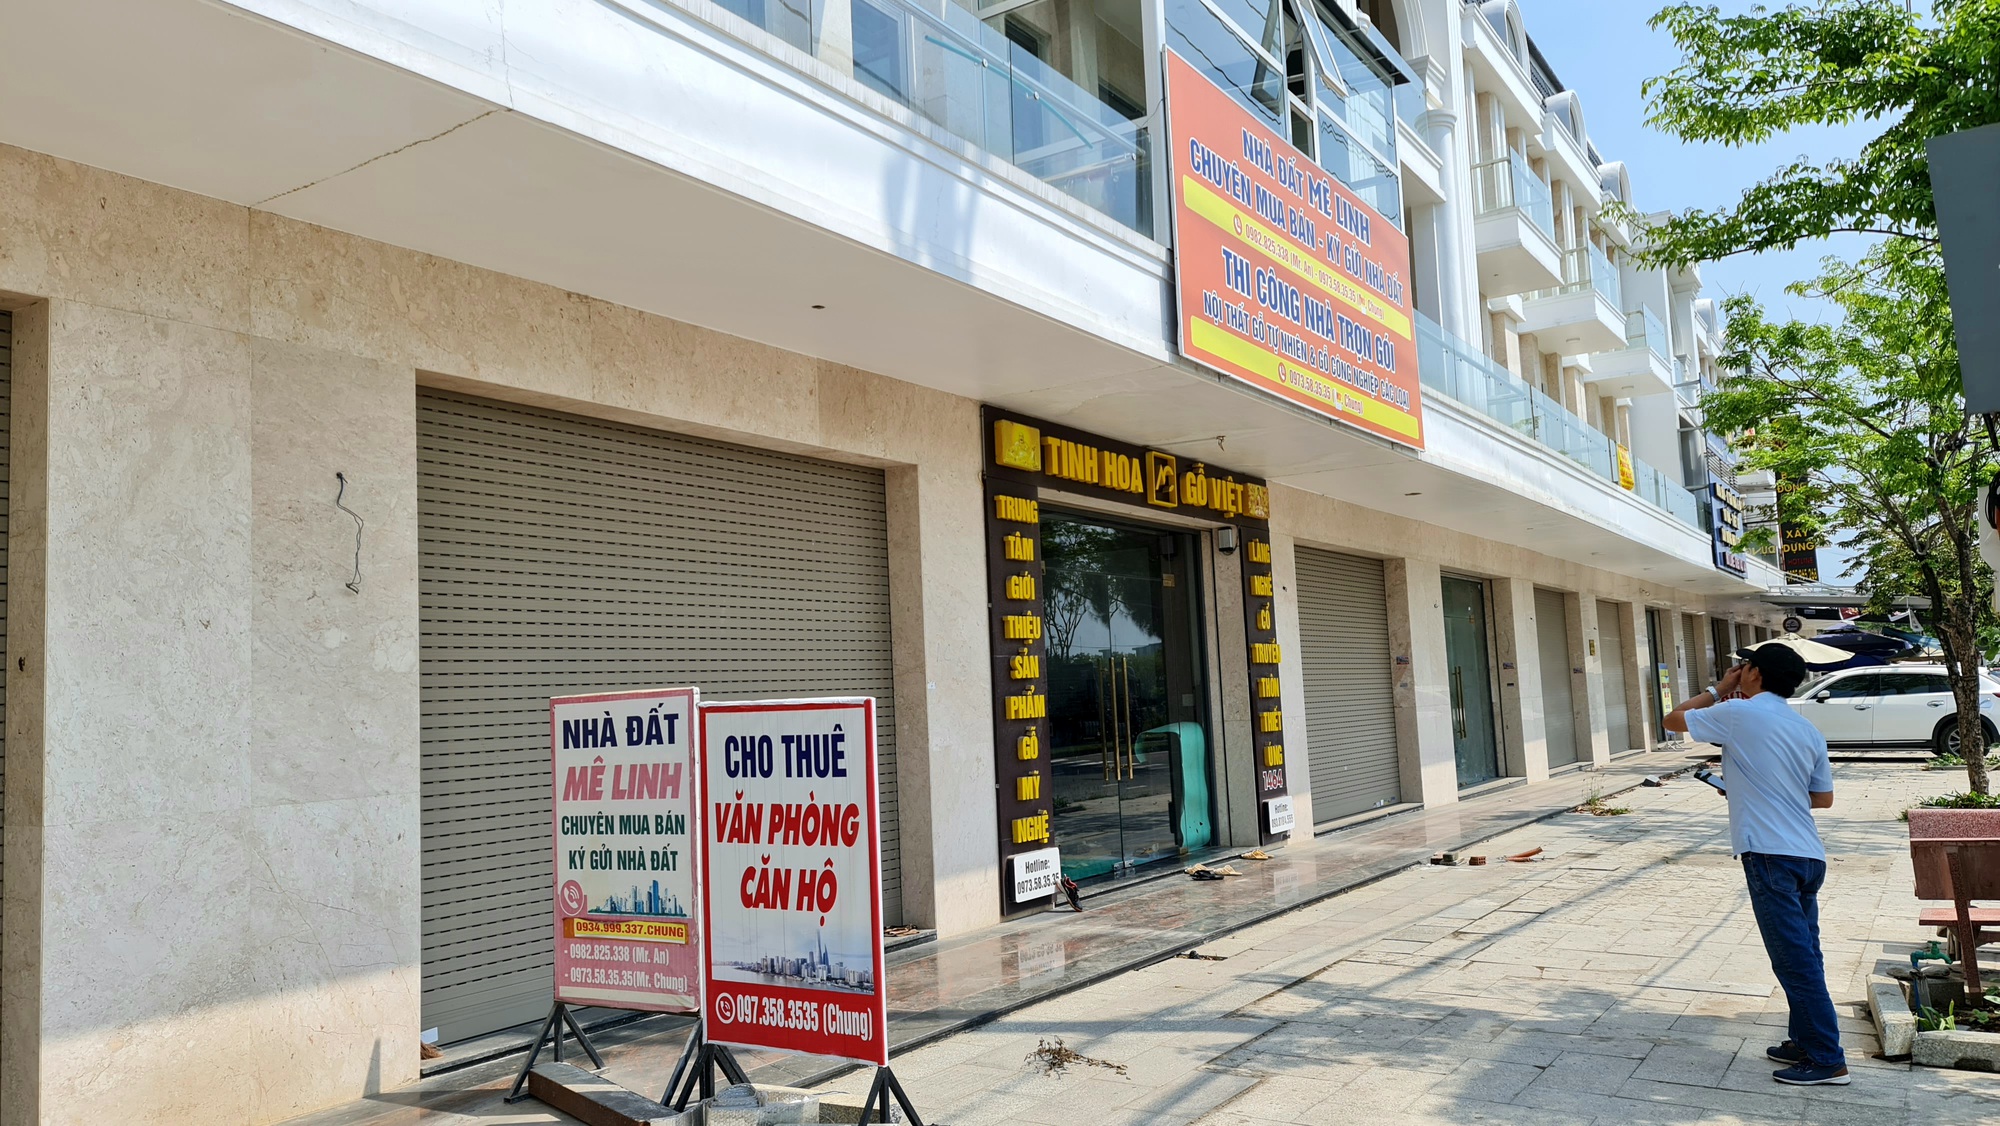 Hoàng loạt shophouse tiền tỉ ở Đà Nẵng ế ẩm, “đắp chiếu” chờ người mua - Ảnh 2.